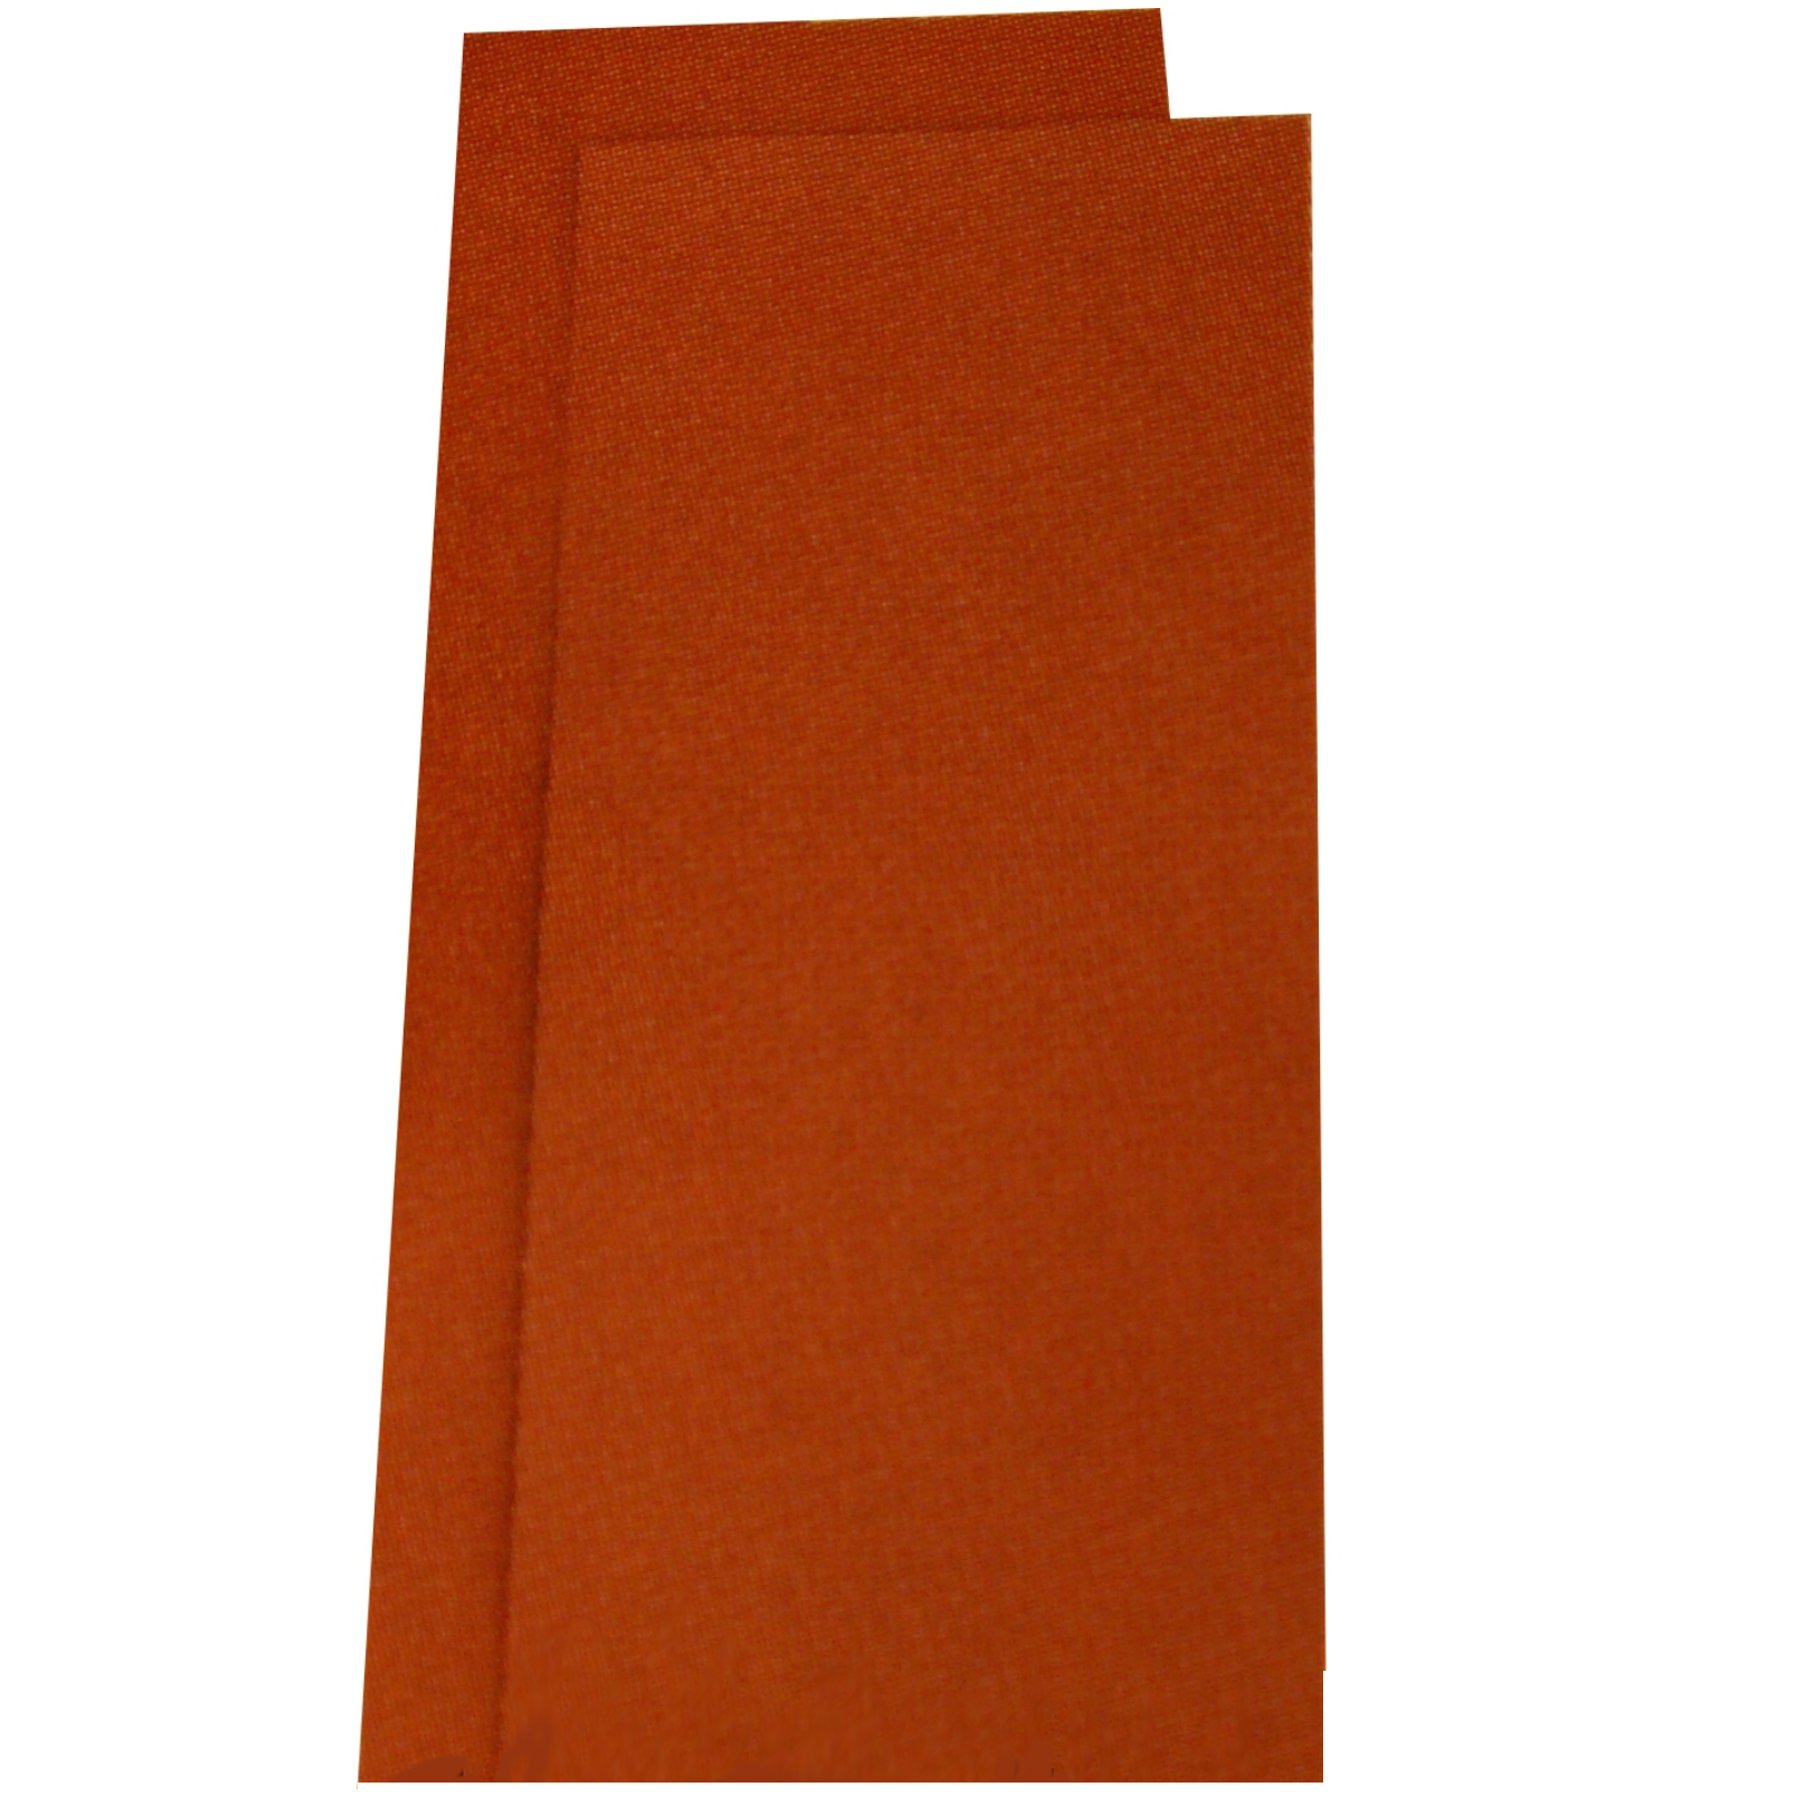 10 Blatt Trockenschleifpapier Körnung 240 Schleifpapier Rutscherpapier von Schleifpapier Trockenschleifpapier